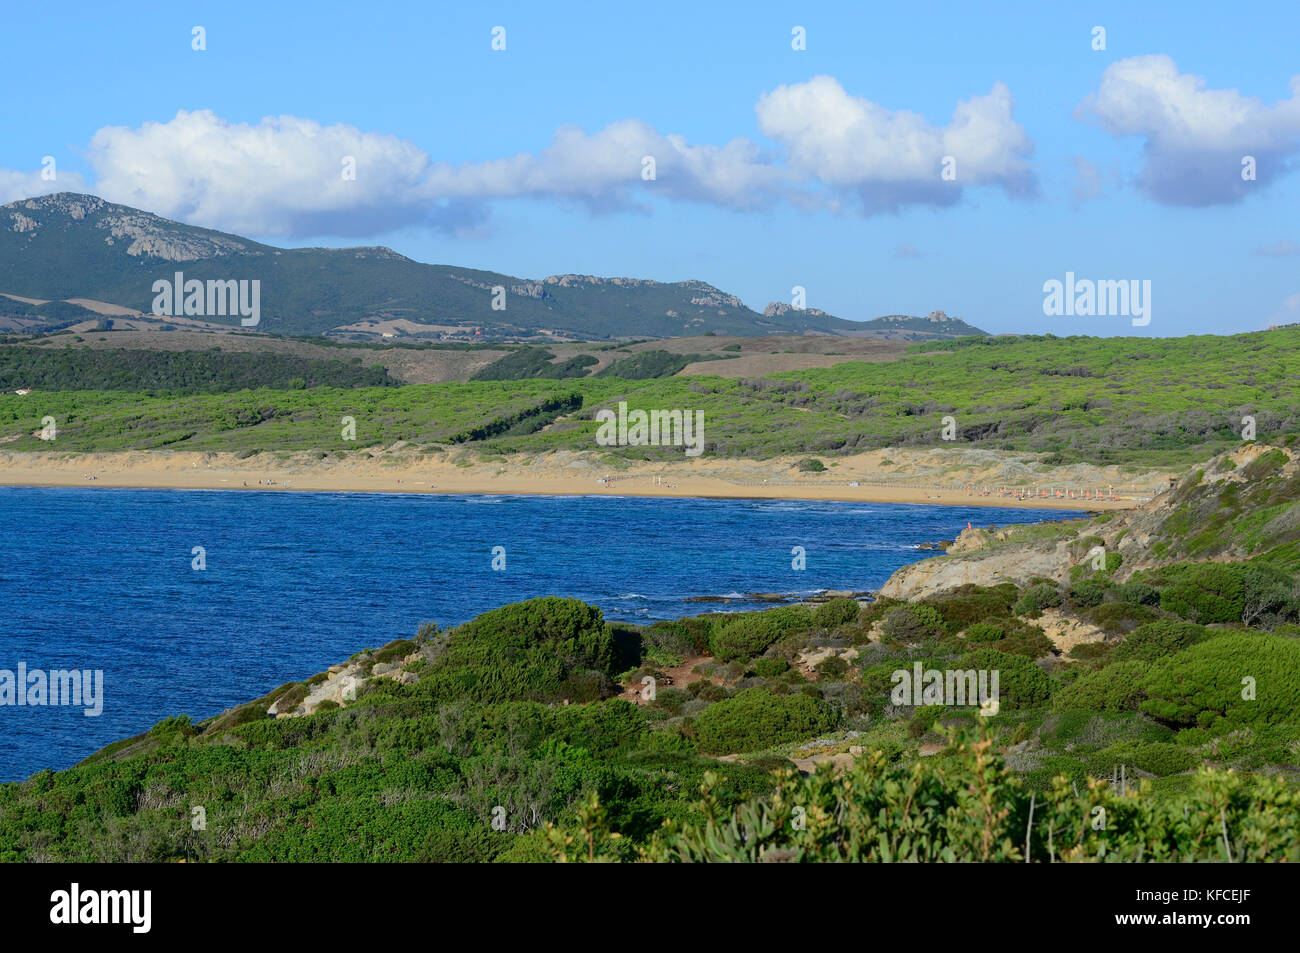 View on the beach of Porto Ferro, Sardinia, Italy Stock Photo